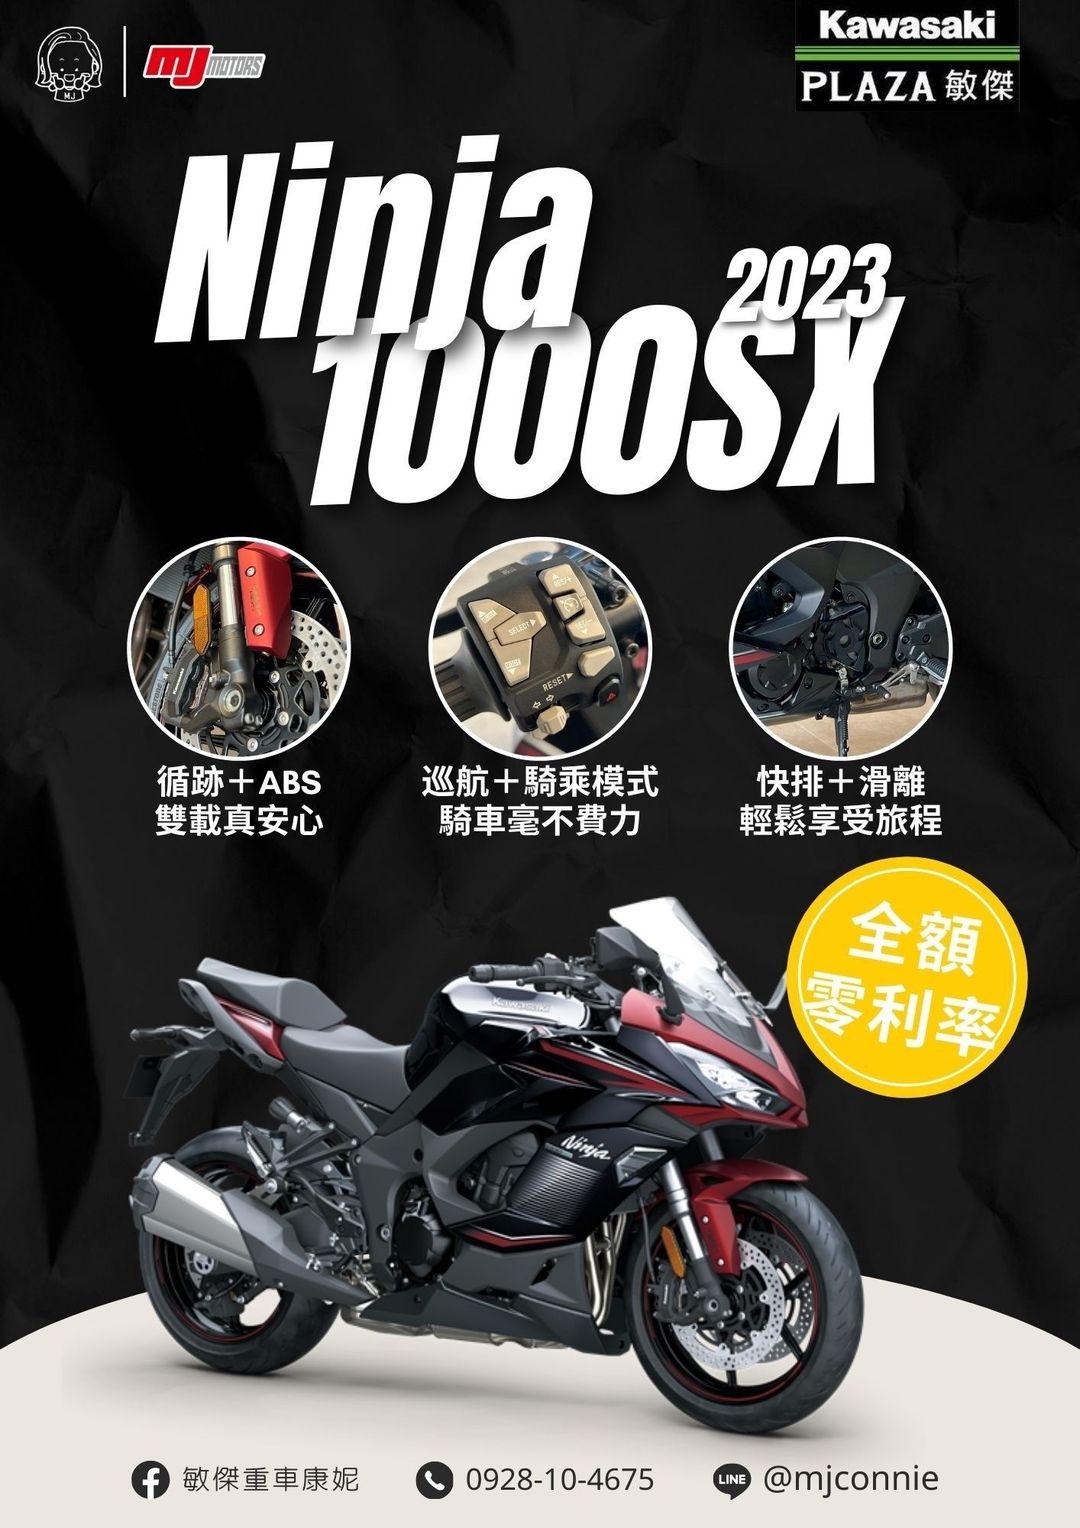 【敏傑車業資深銷售專員 康妮 Connie】KAWASAKI NINJA1000 - 「Webike-摩托車市」 『敏傑康妮』您絕對不能錯過忍千!!! Kawasaki Z1000SX CP值 最高的四缸旅跑車款 再加碼全額零利率